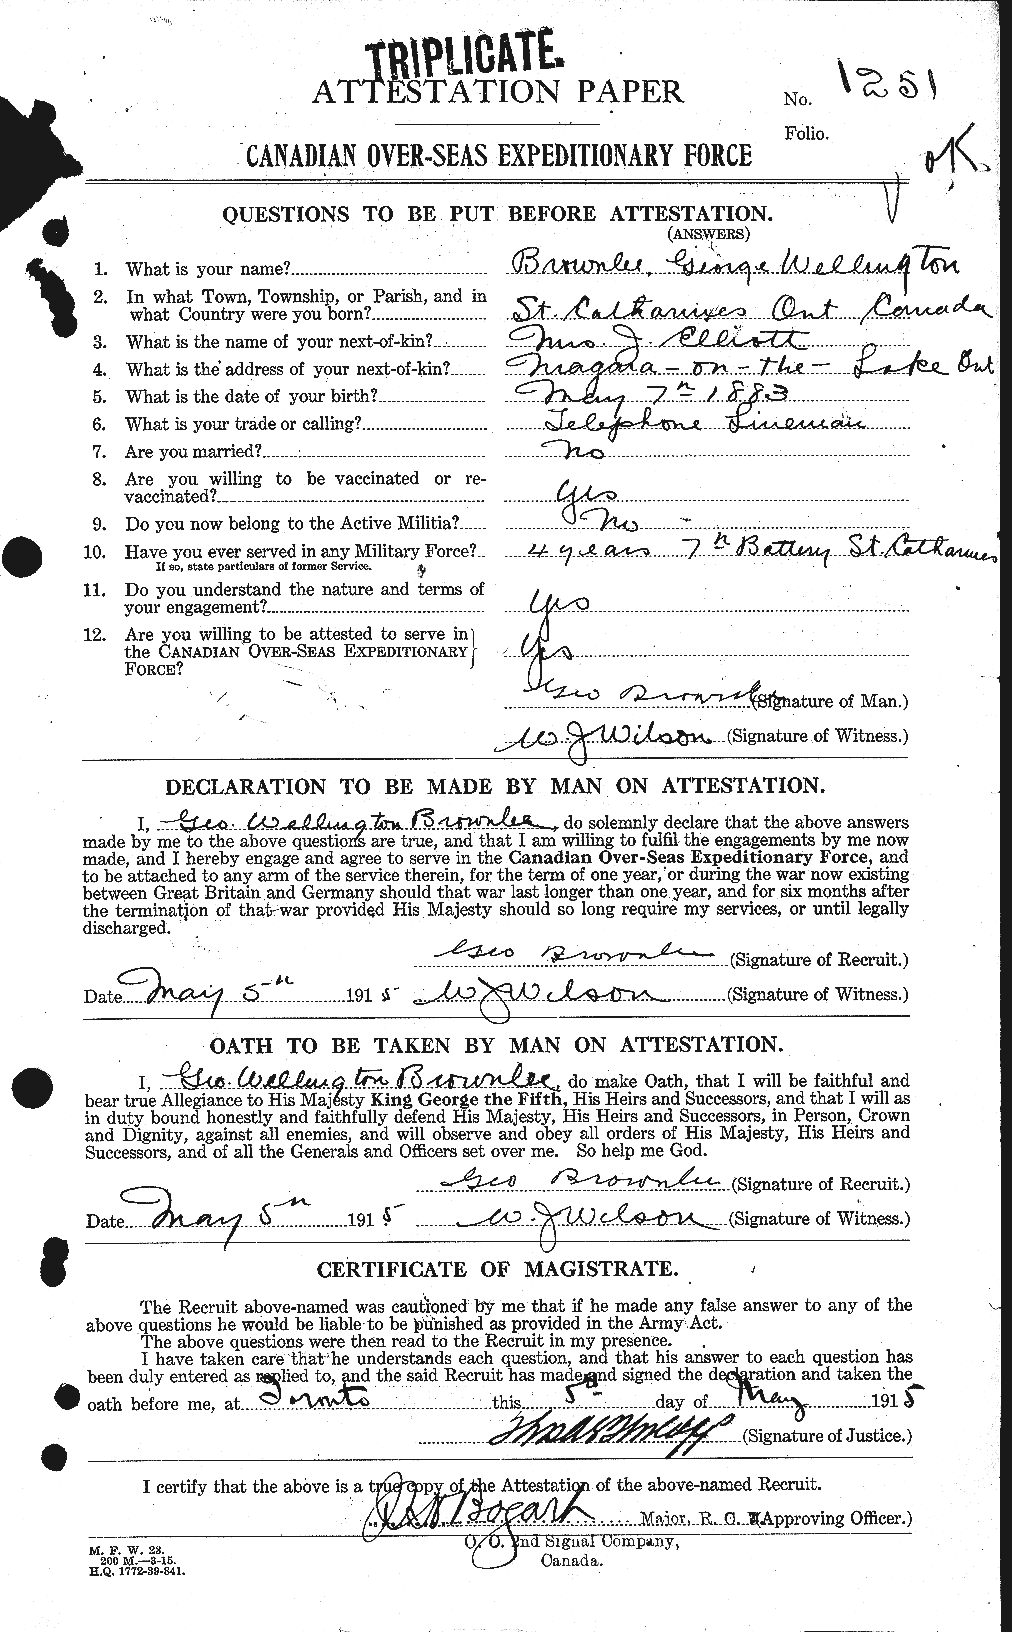 Dossiers du Personnel de la Première Guerre mondiale - CEC 267562a